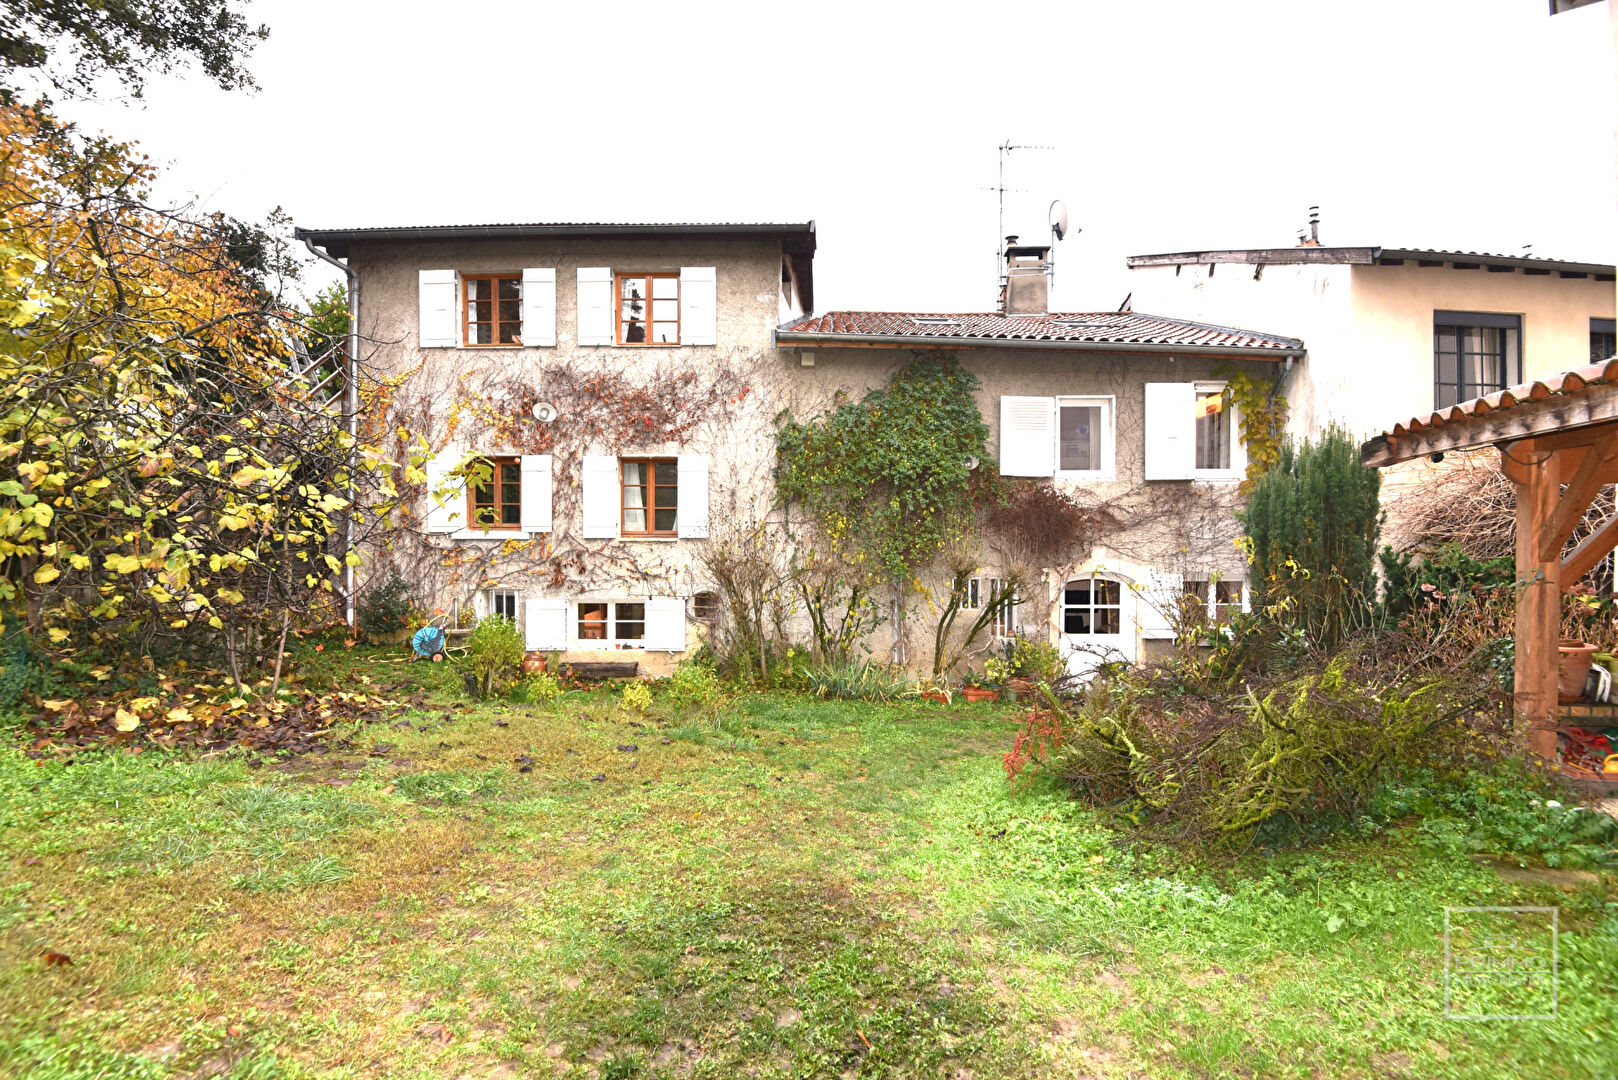 Saint Cyr au Mont d’Or, Maison de village de 155m² habitables avec jardin, au calme absolu